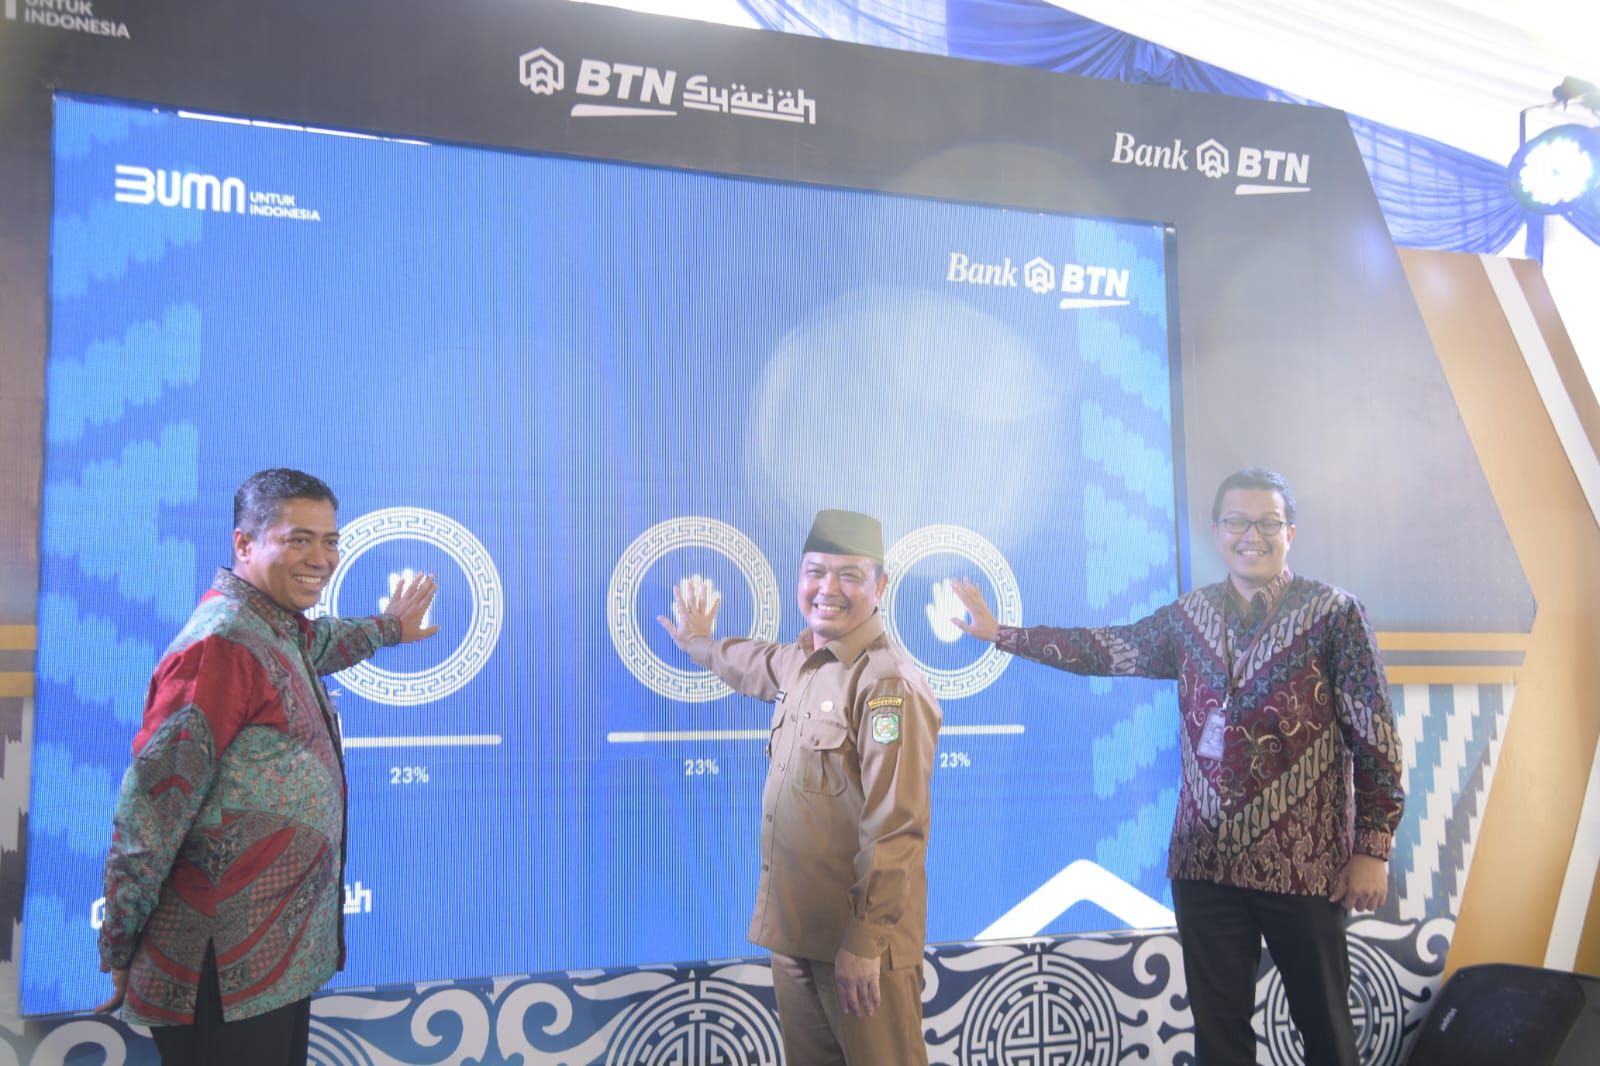 BTN Syariah menjadi pendukung utama bisnis Bank BTN, khususnya di segmen pembiayaan perumahan telah berkontribusi menyalurkan pembiayaan untuk lebih dari 318.000 rumah bagi masyarakat Indonesia.